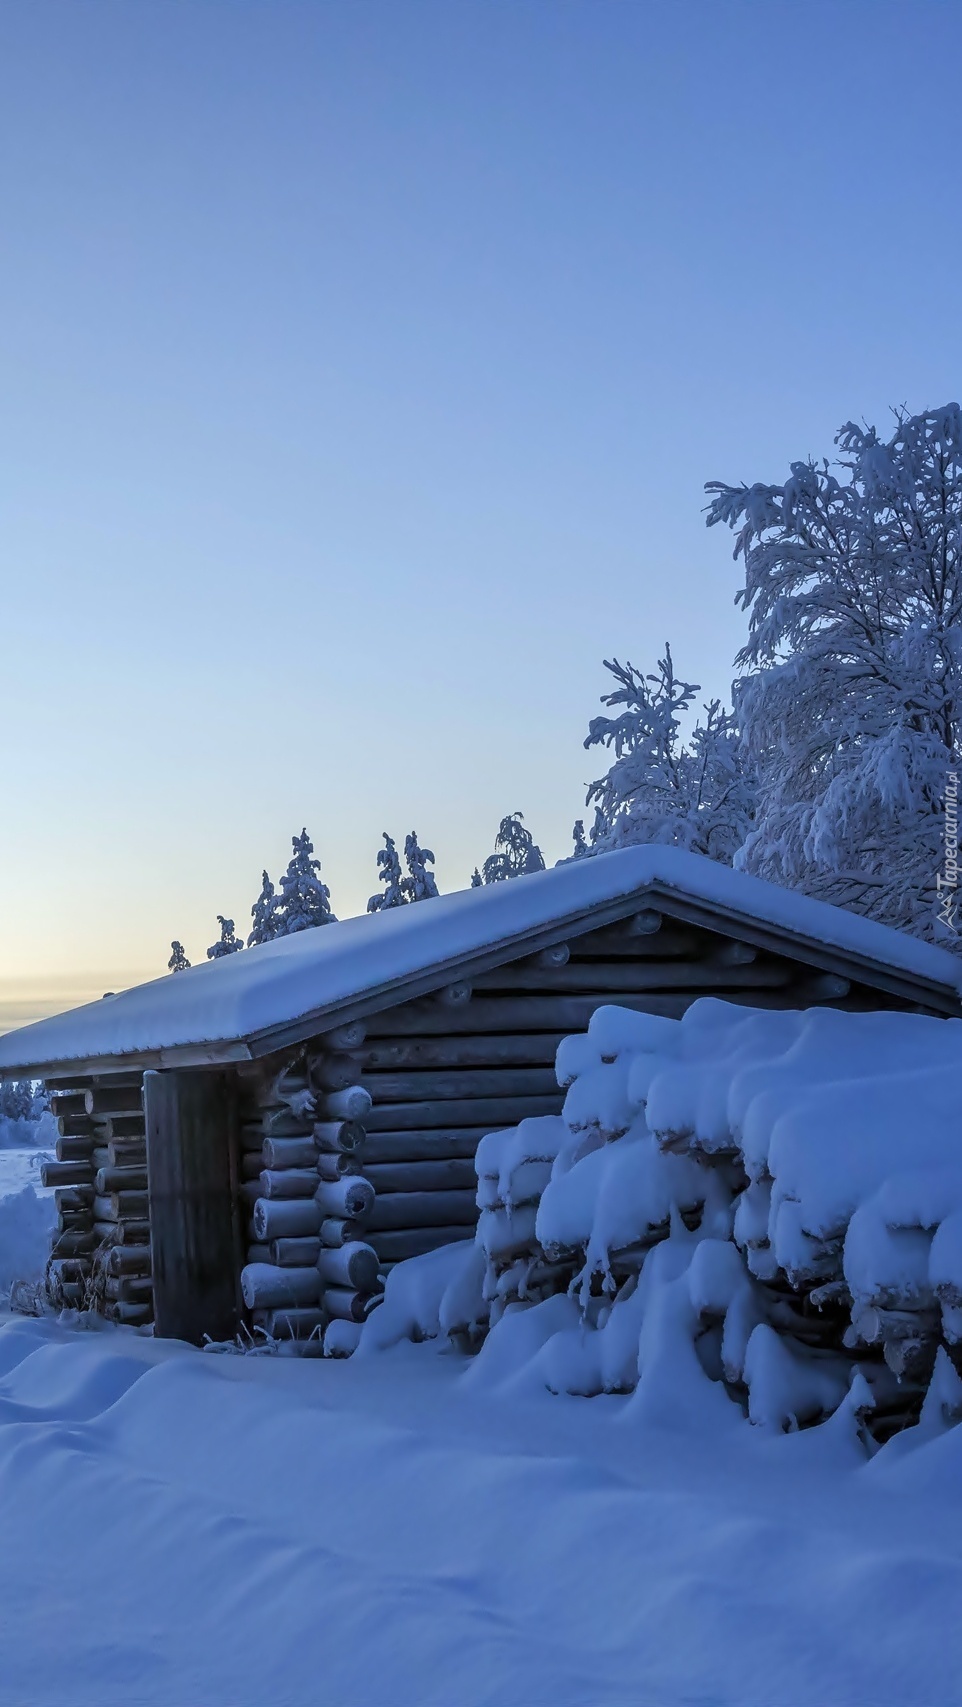 Zasypany śniegiem domek